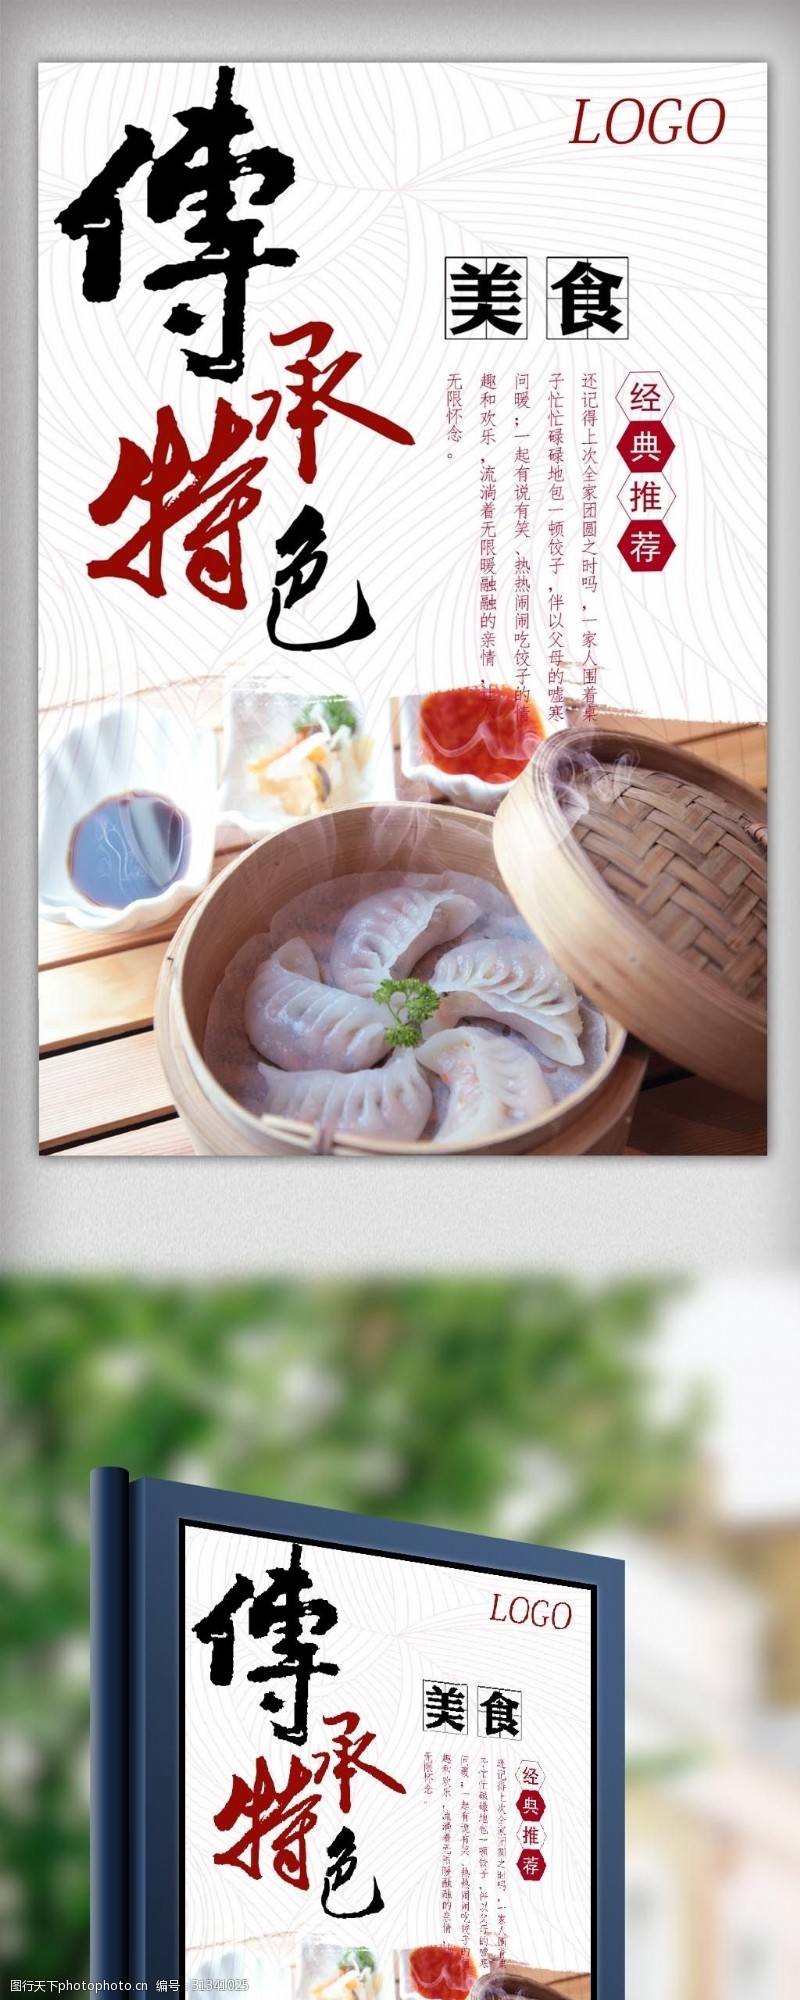 最新饺子水饺中国美食餐饮海报素材